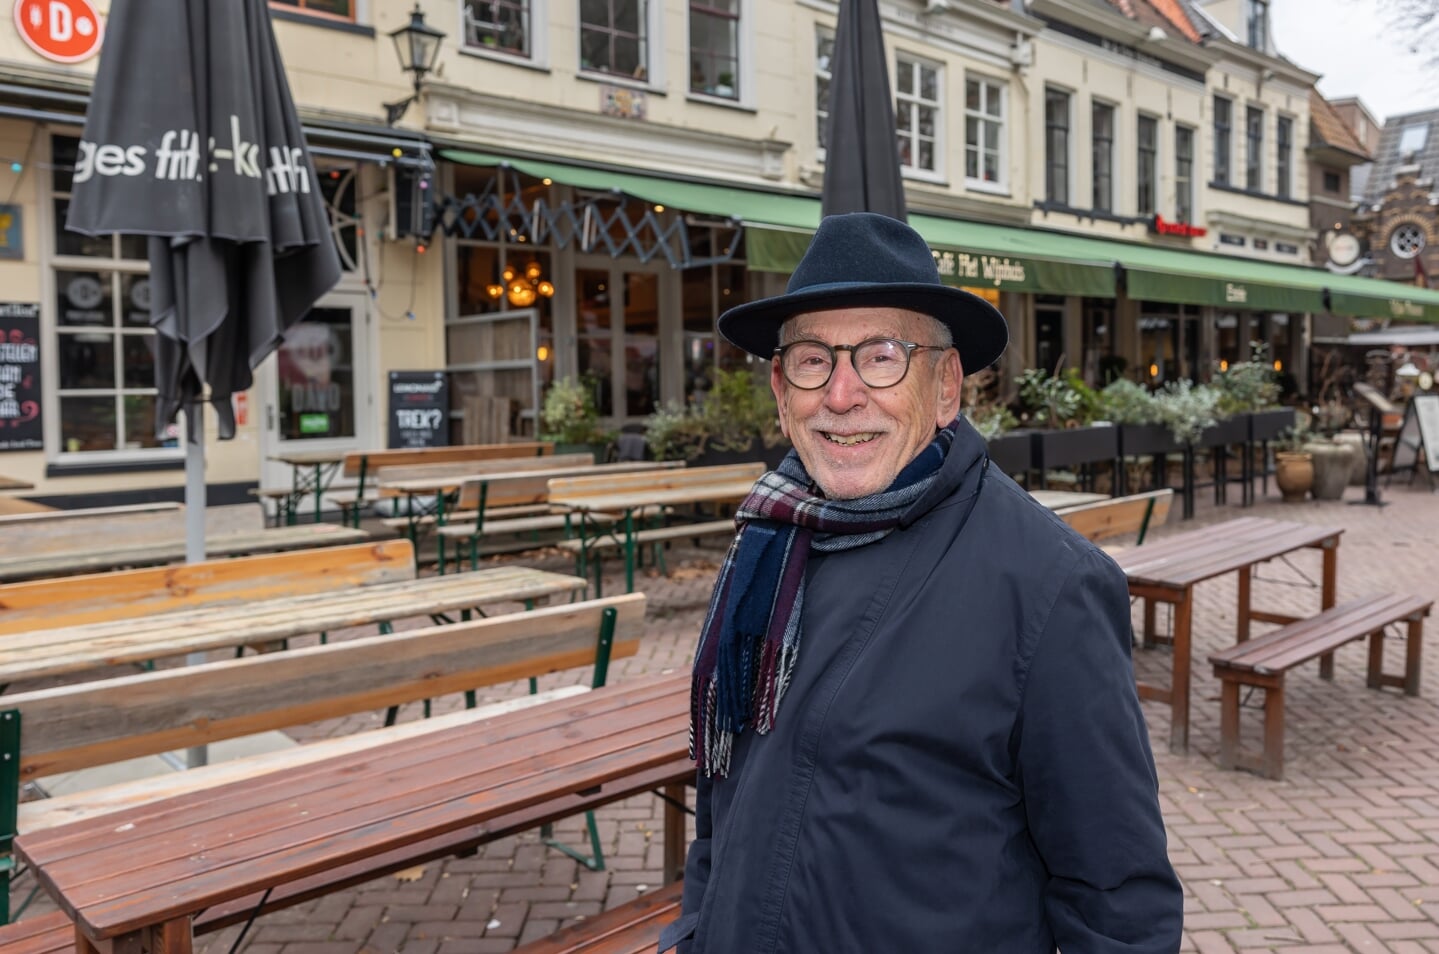 Ruim 35 jaar lang runde Theo Runhaar Grand Café het Wijnhuis, nog steeds een begrip in de stad. Begin jaren tachtig zette hij daarmee een nieuw concept neer en was hij zijn tijd vooruit.